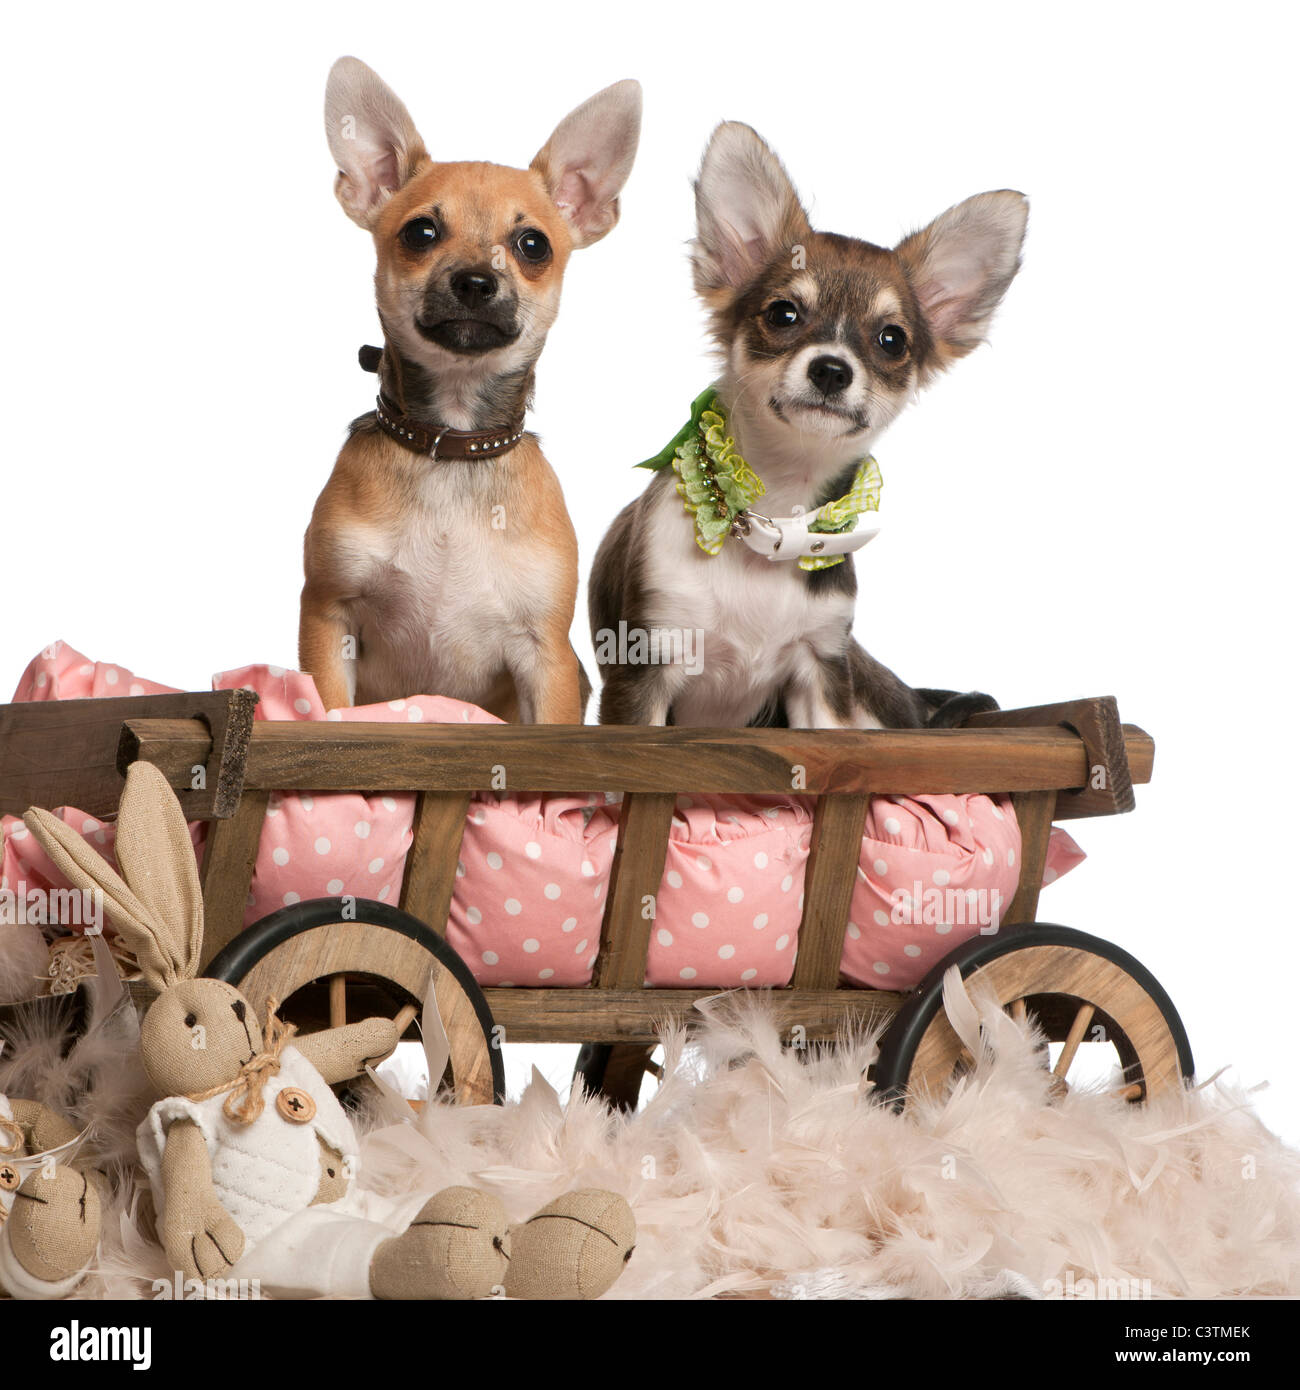 Cuccioli di Chihuahua, 3 mesi di età, seduta in cane vagone letto con animali imbalsamati davanti a uno sfondo bianco Foto Stock